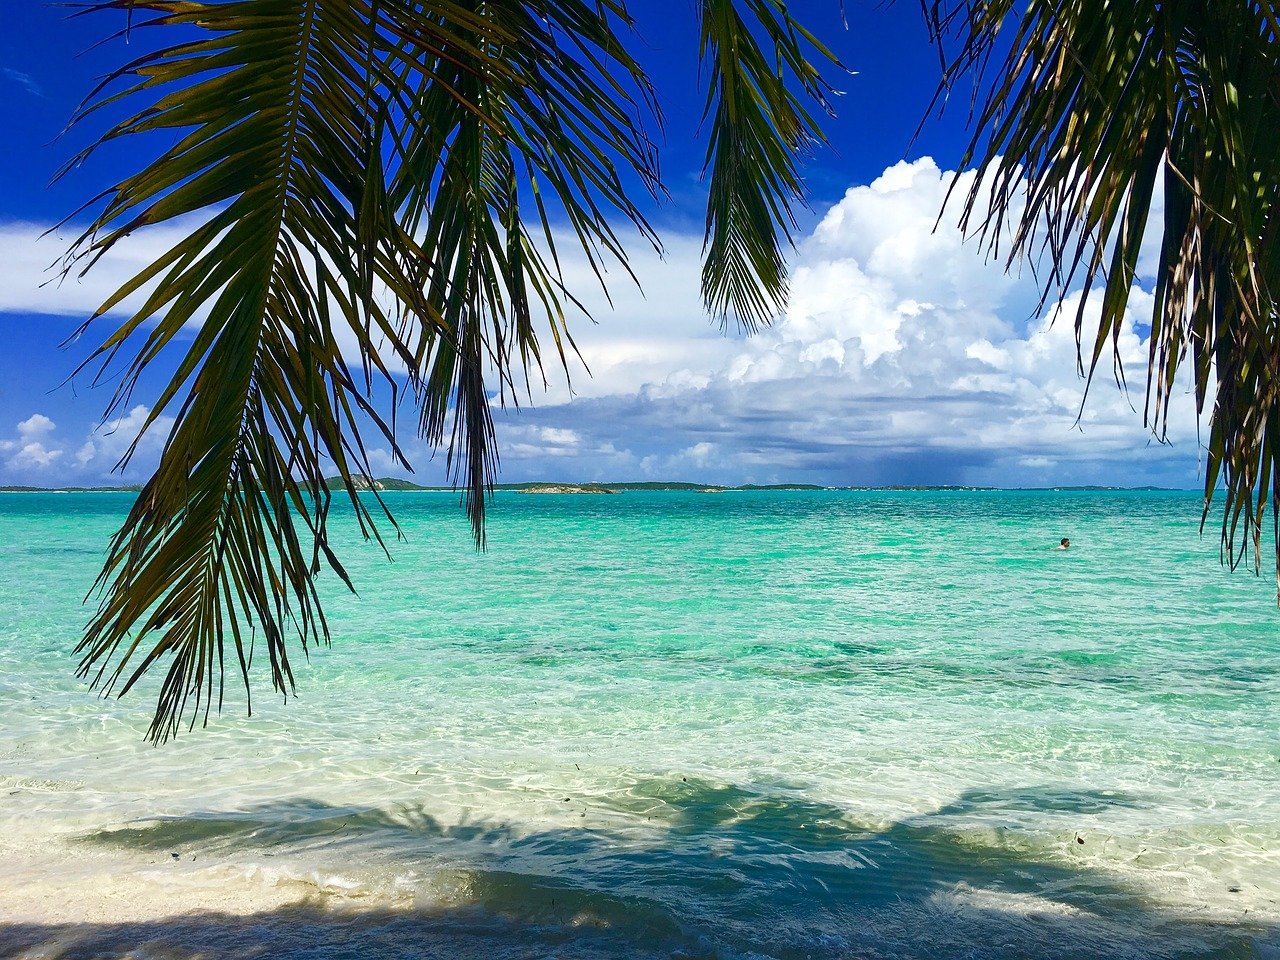 A beach in the Bahamas.